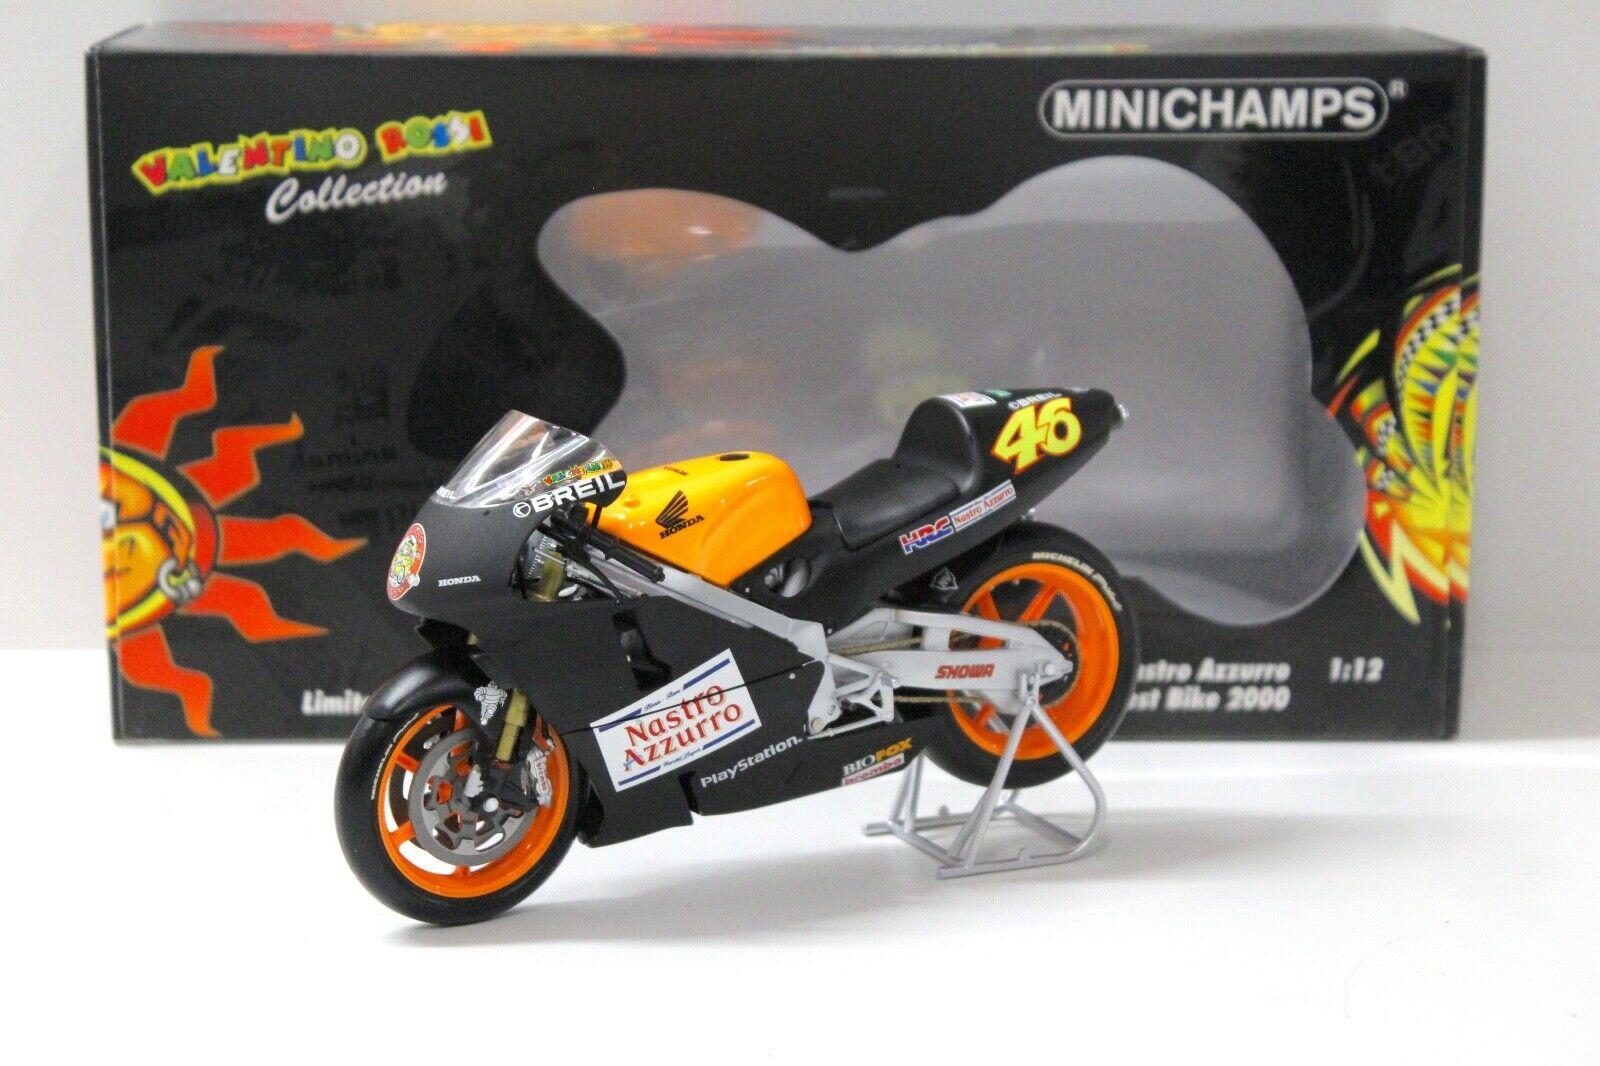 1:12 Minichamps Honda NSR 500 V.Rossi Test Bike 2000